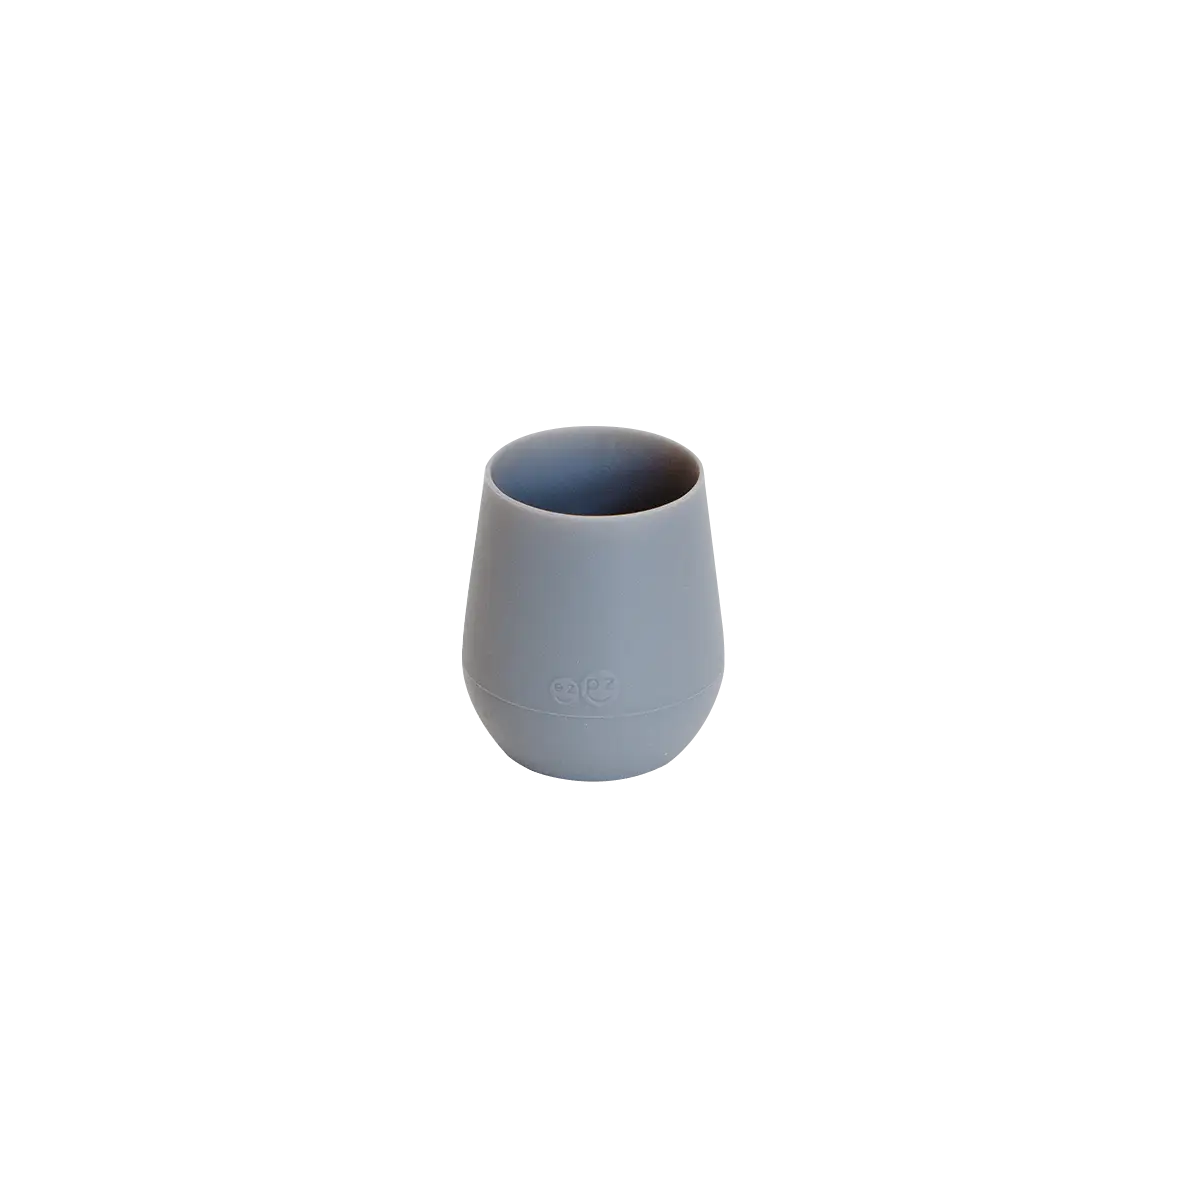 ezpz - Tiny Cup